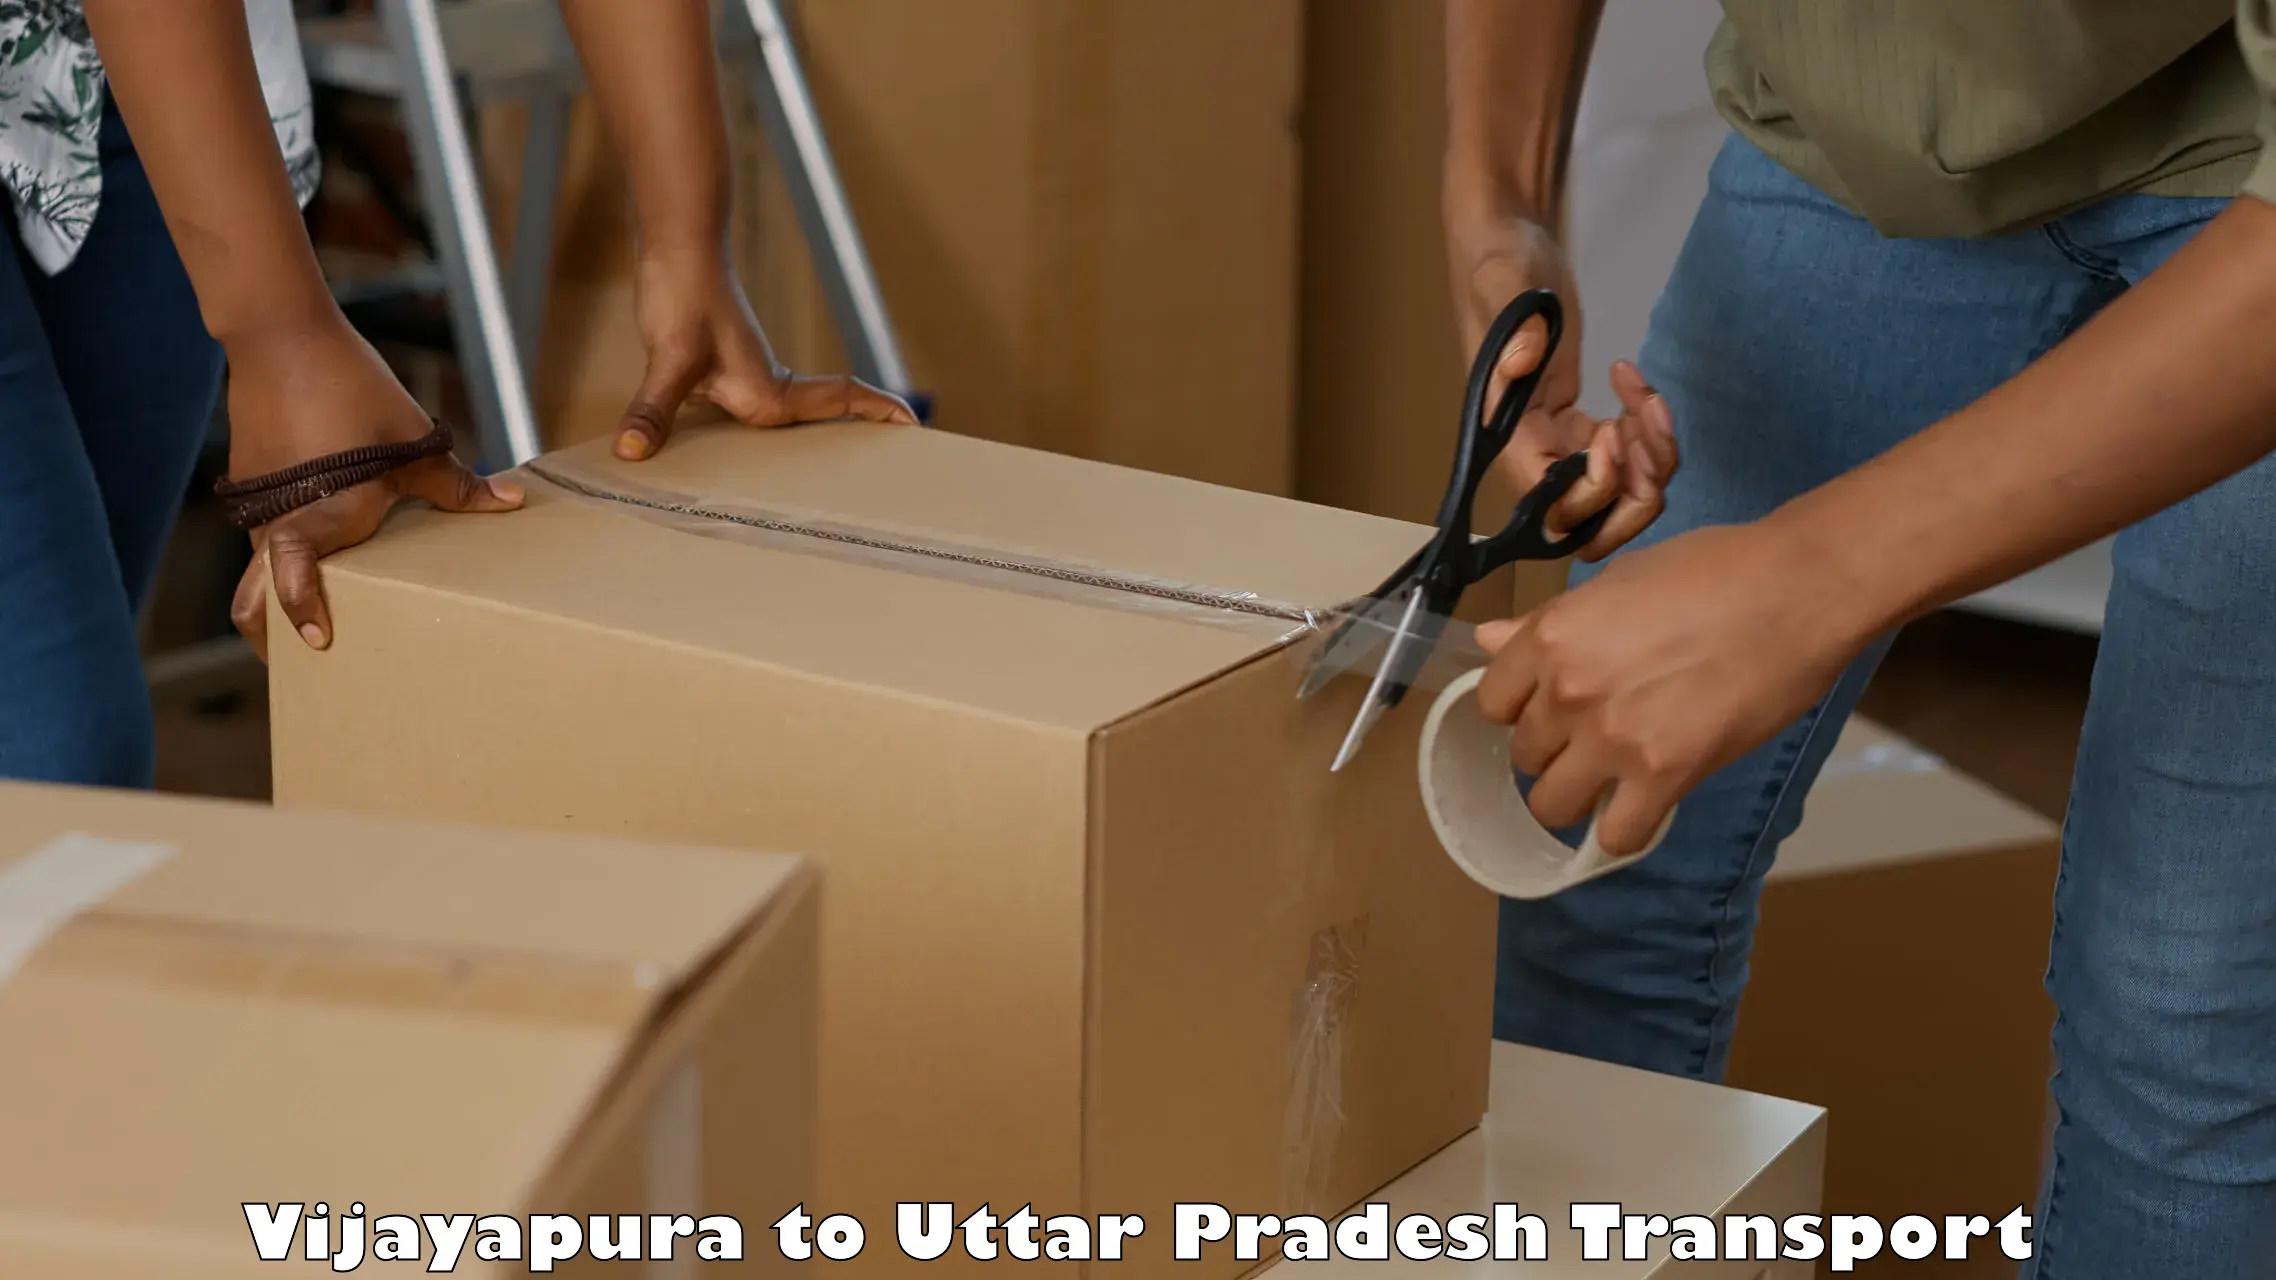 Furniture transport service Vijayapura to Pihani